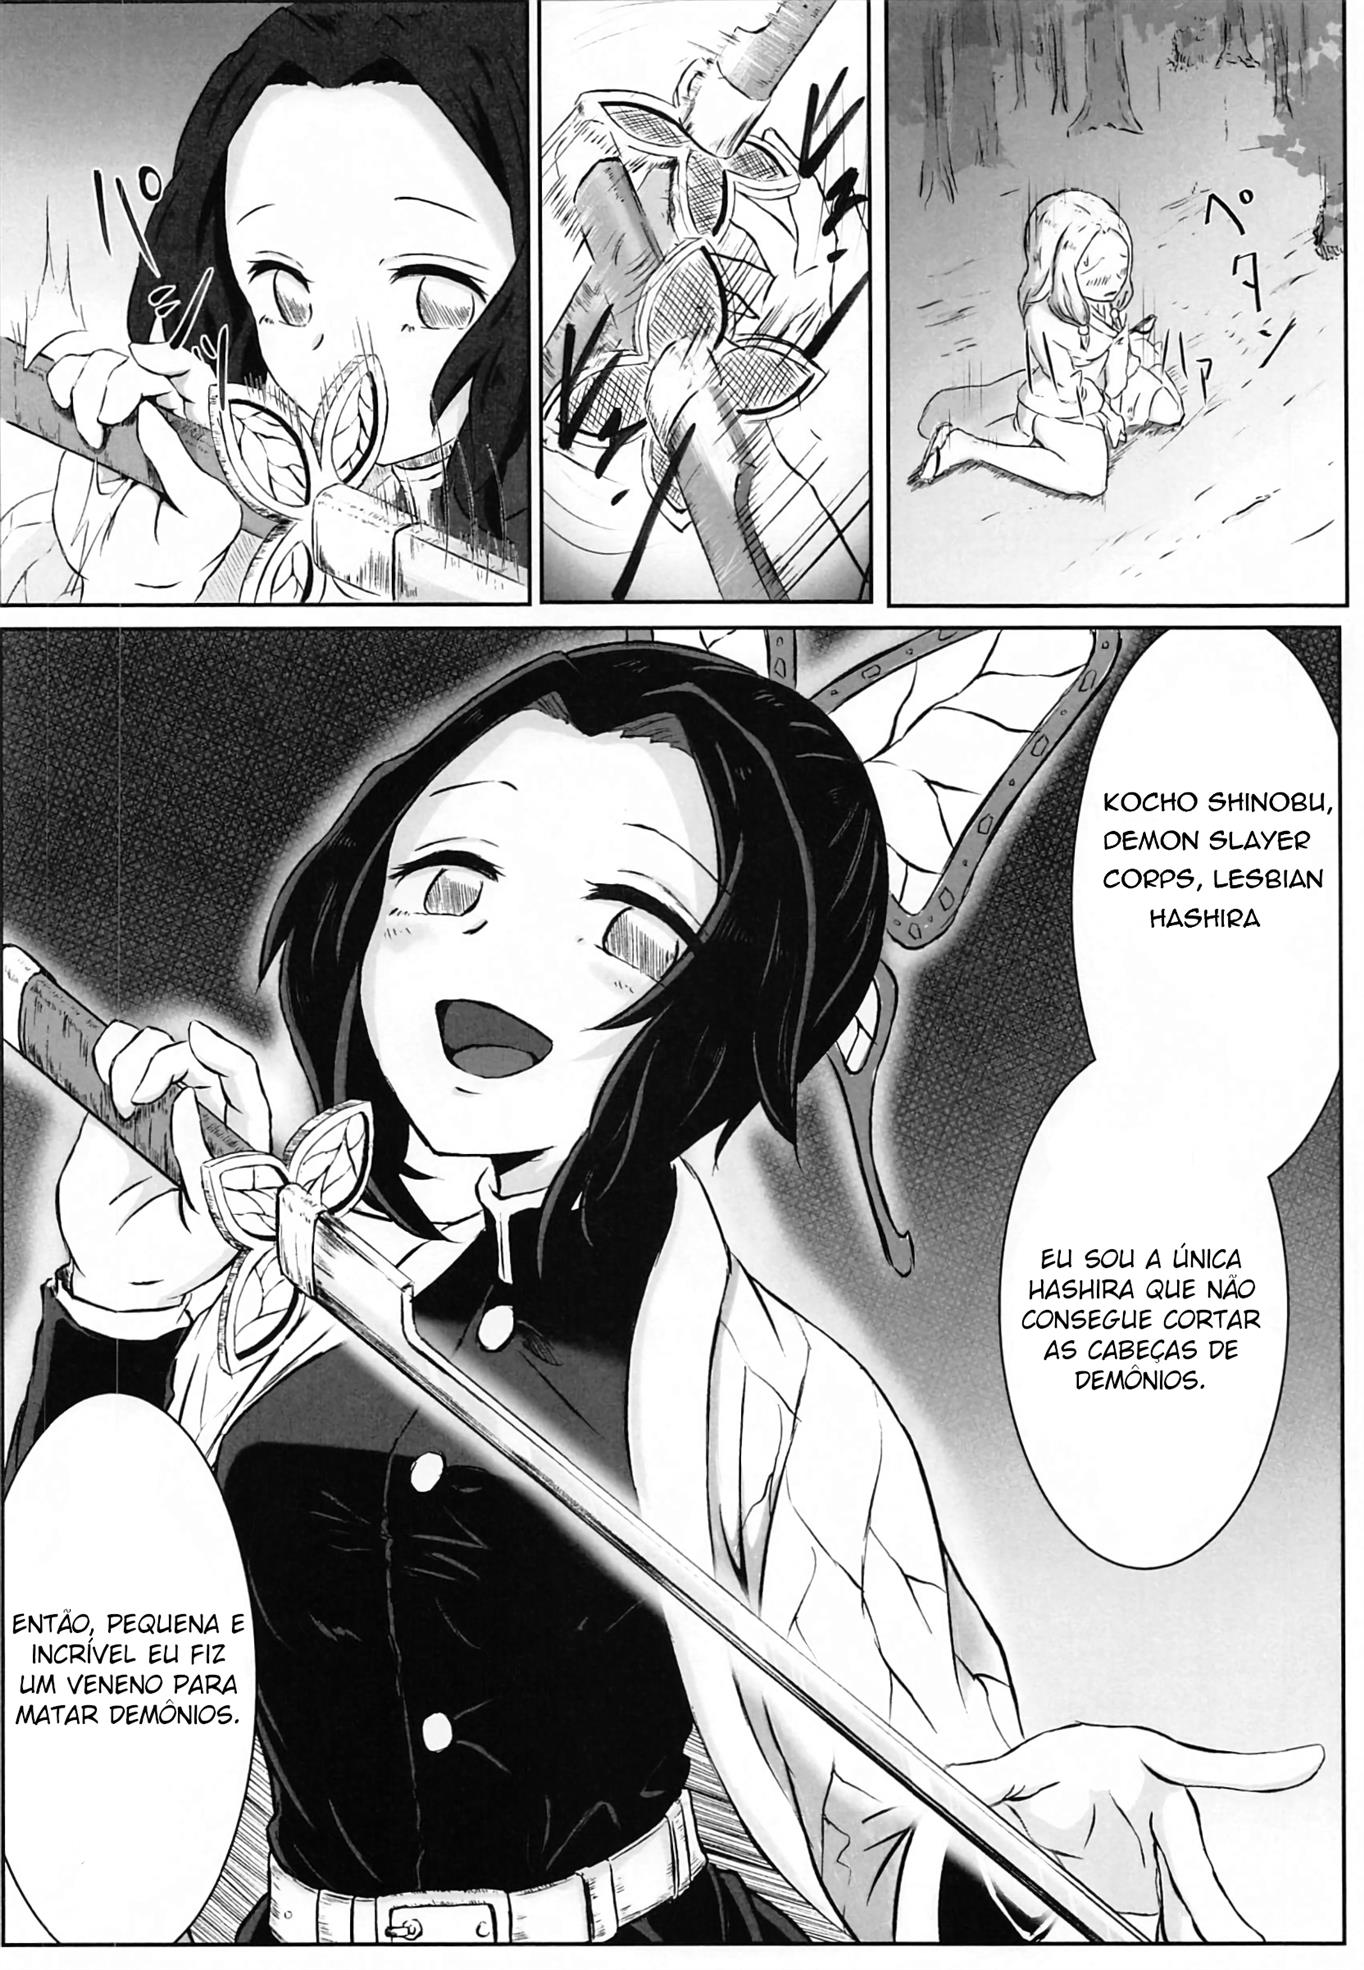 Demon Slayer Hentai: Hashira lésbica